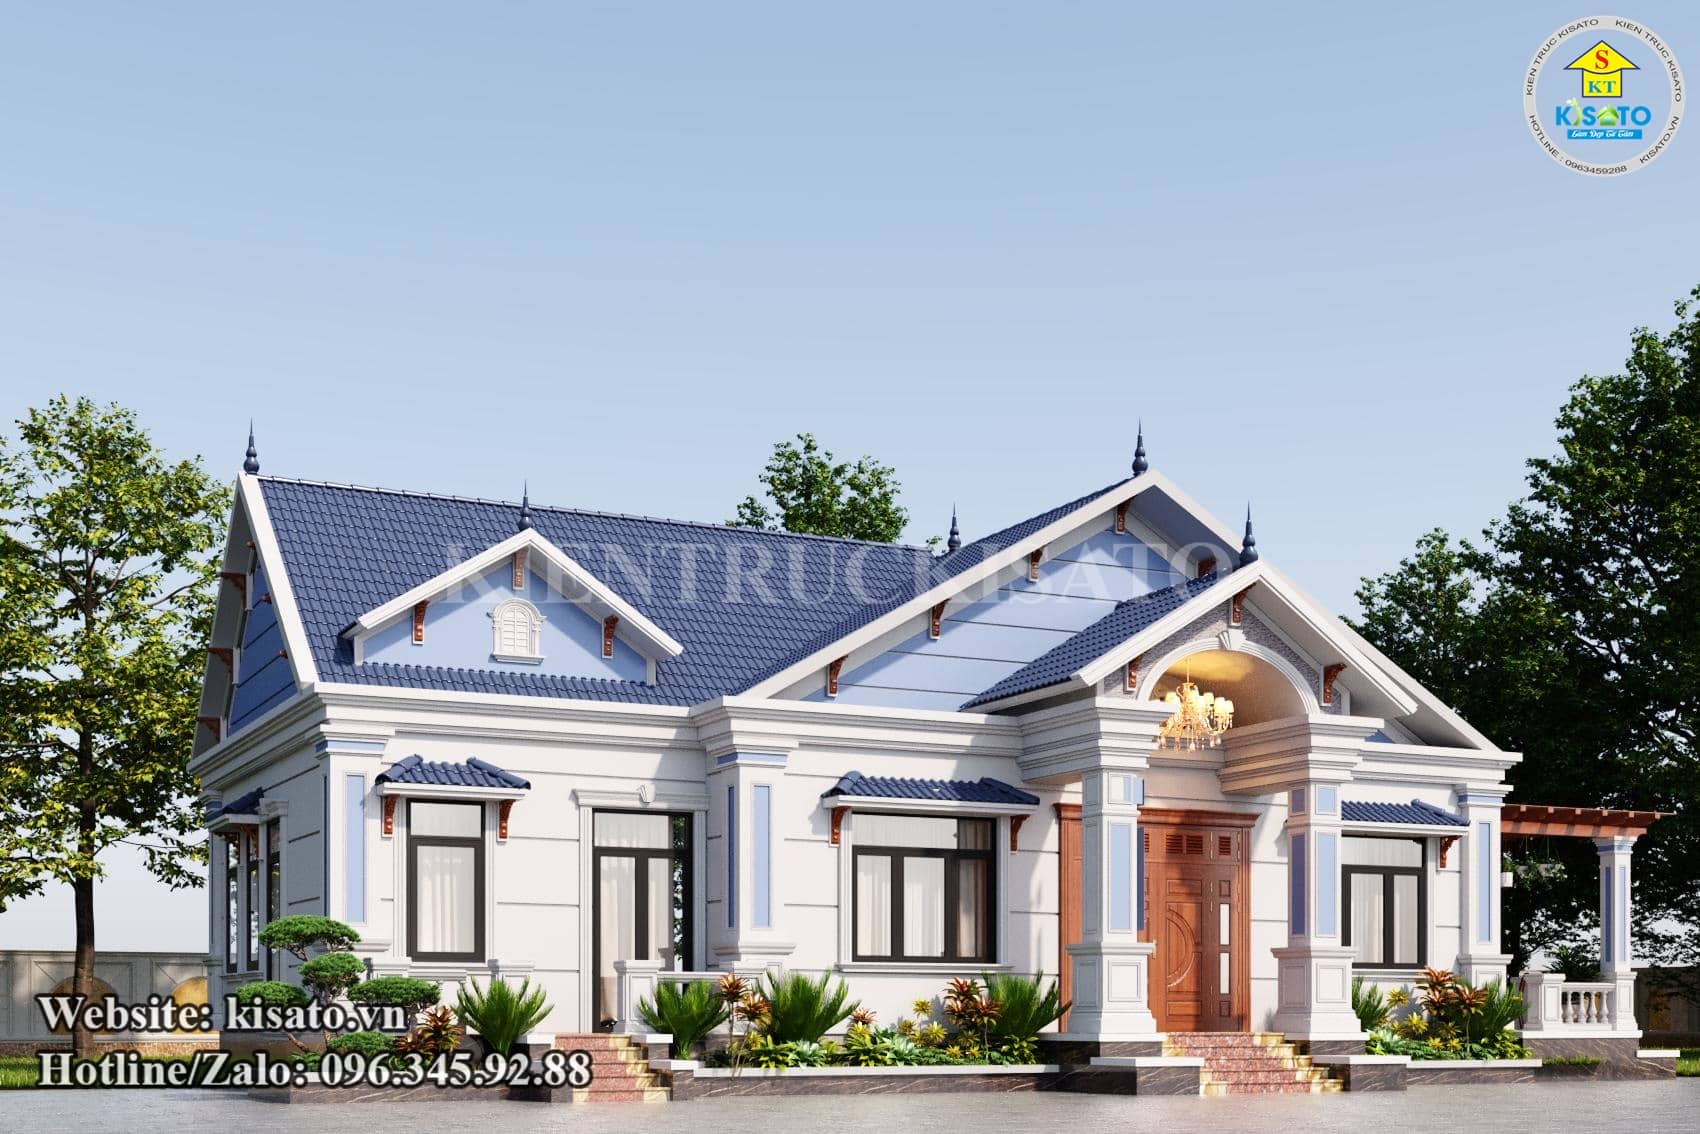 Phối cảnh 3D mẫu nhà cấp 4 tân cổ điển đẹp đáng tham khảo nhất năm tại Phú Thọ